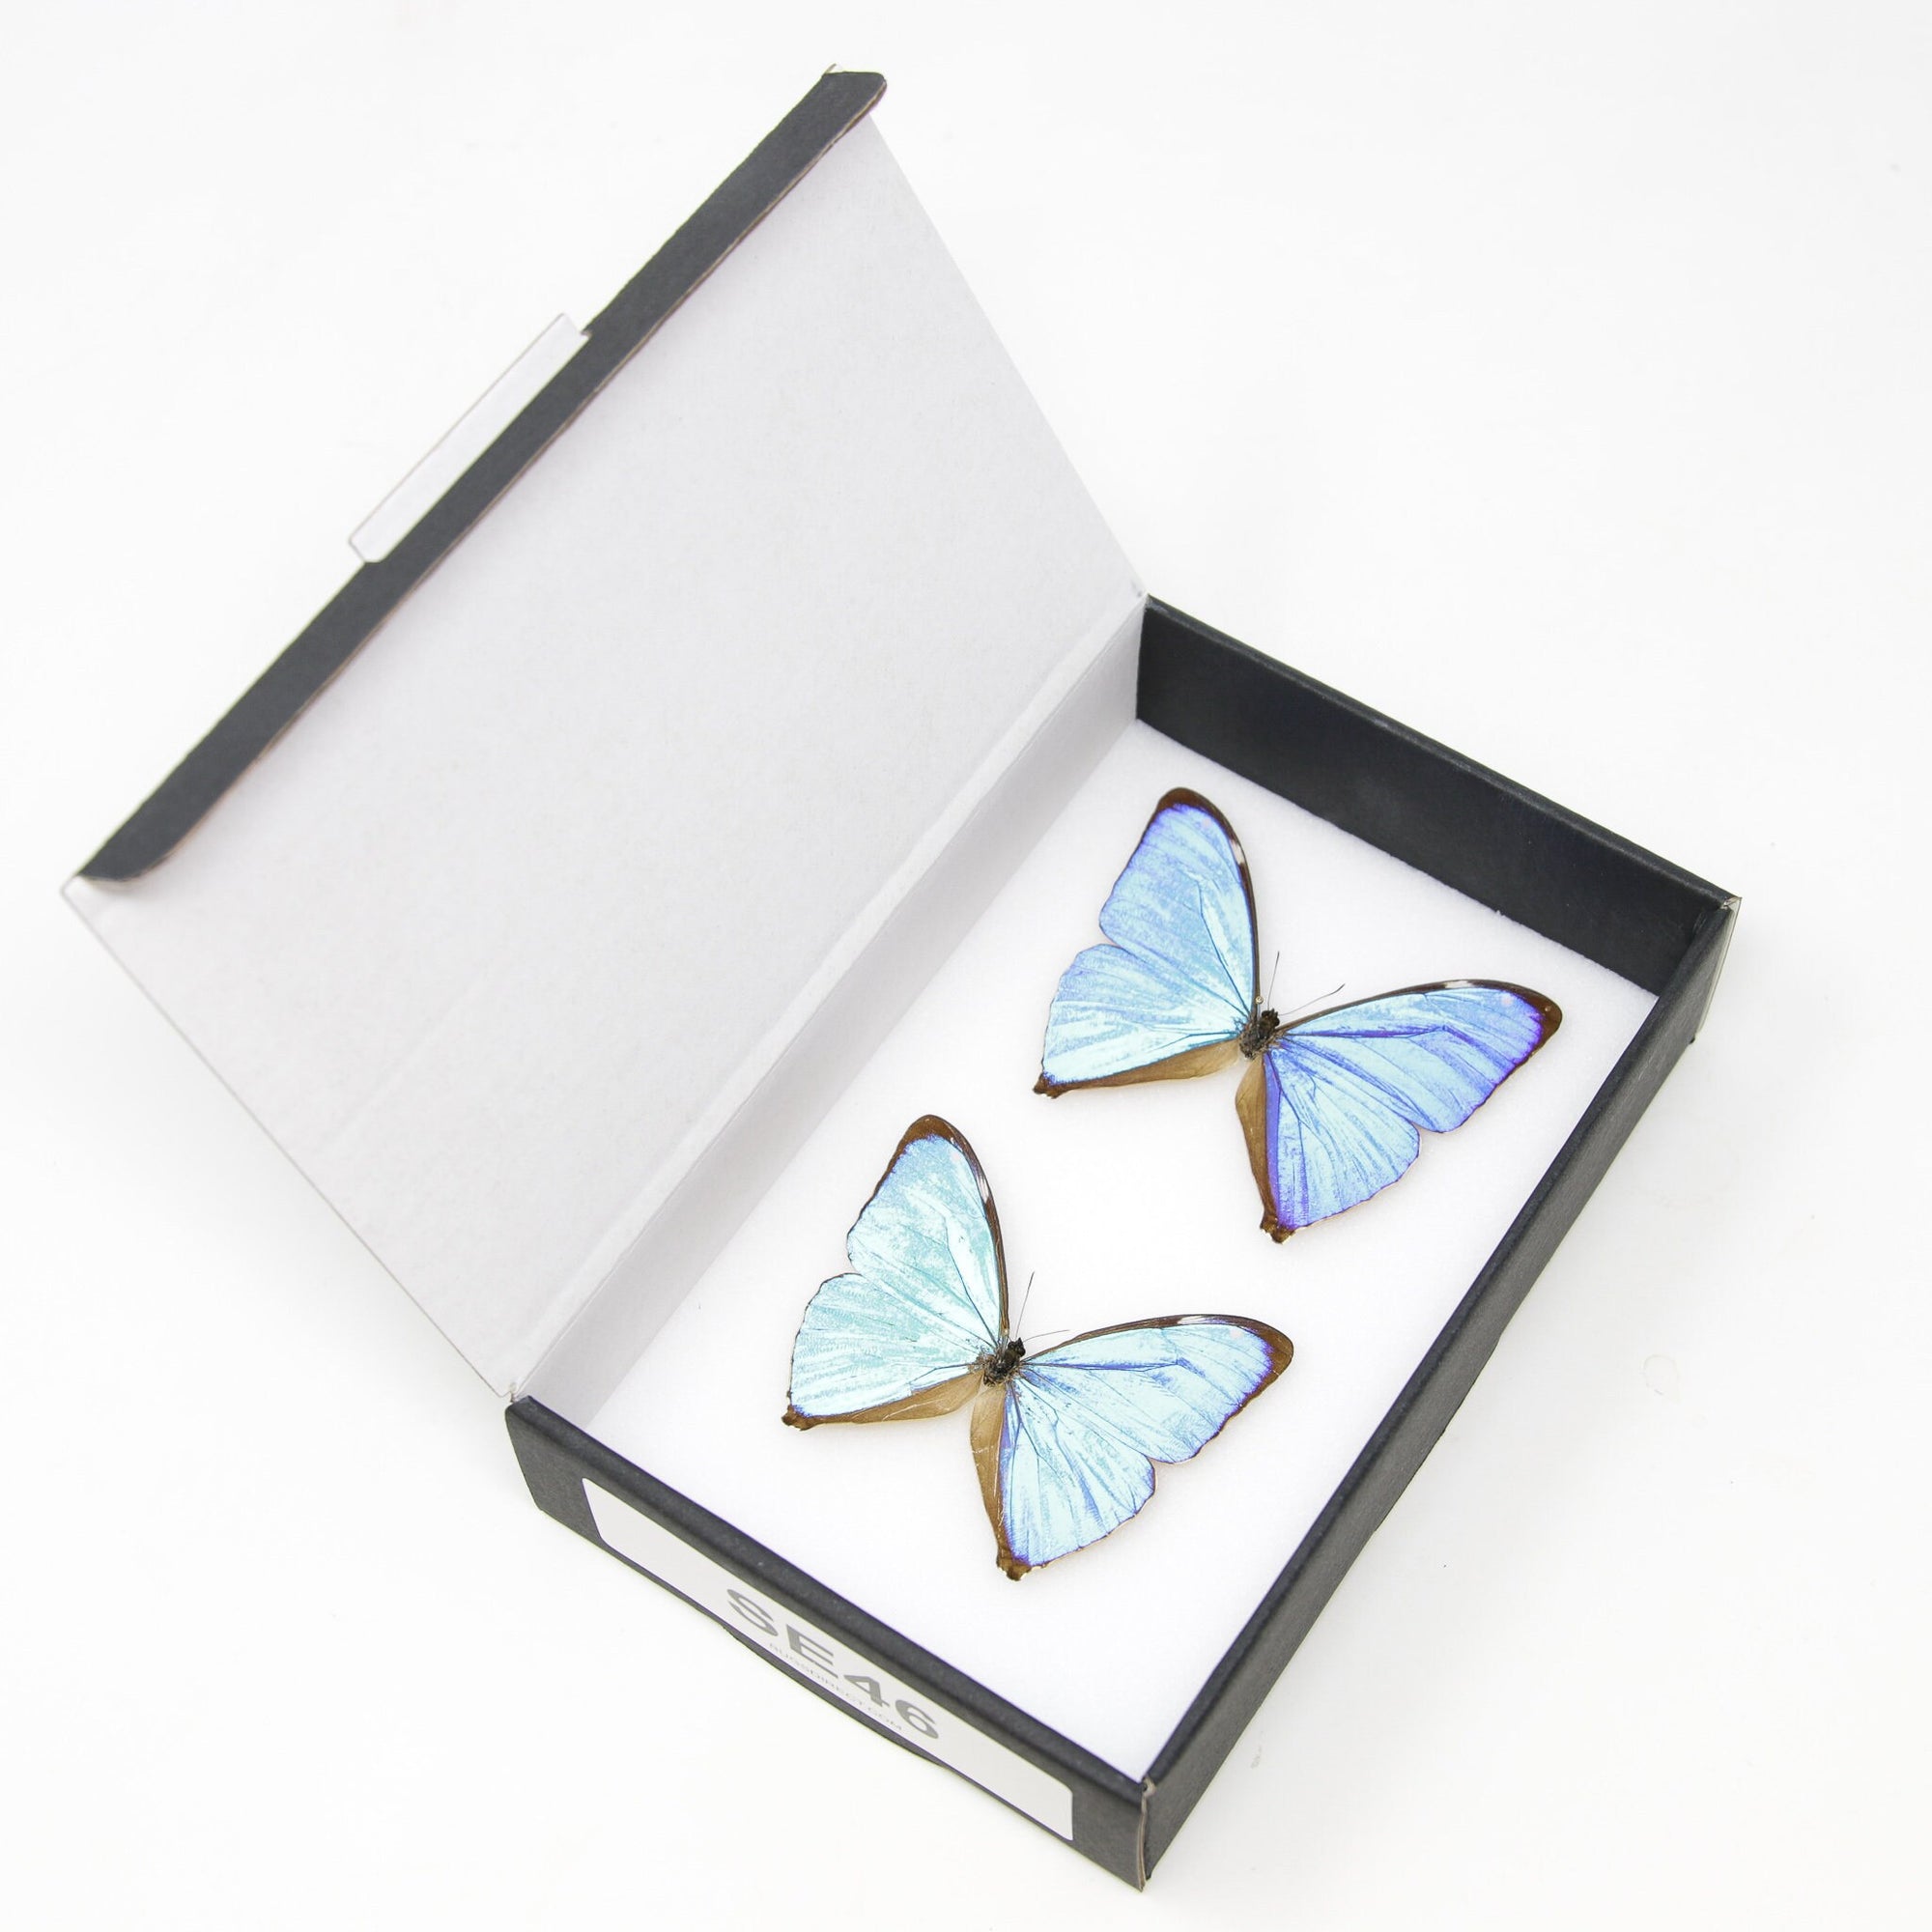 TWO (2) The Aega Morpho Butterflies (Morpho aega) A1- Quality SET SPECIMENS, Lepidoptera Entomology Box #SE46